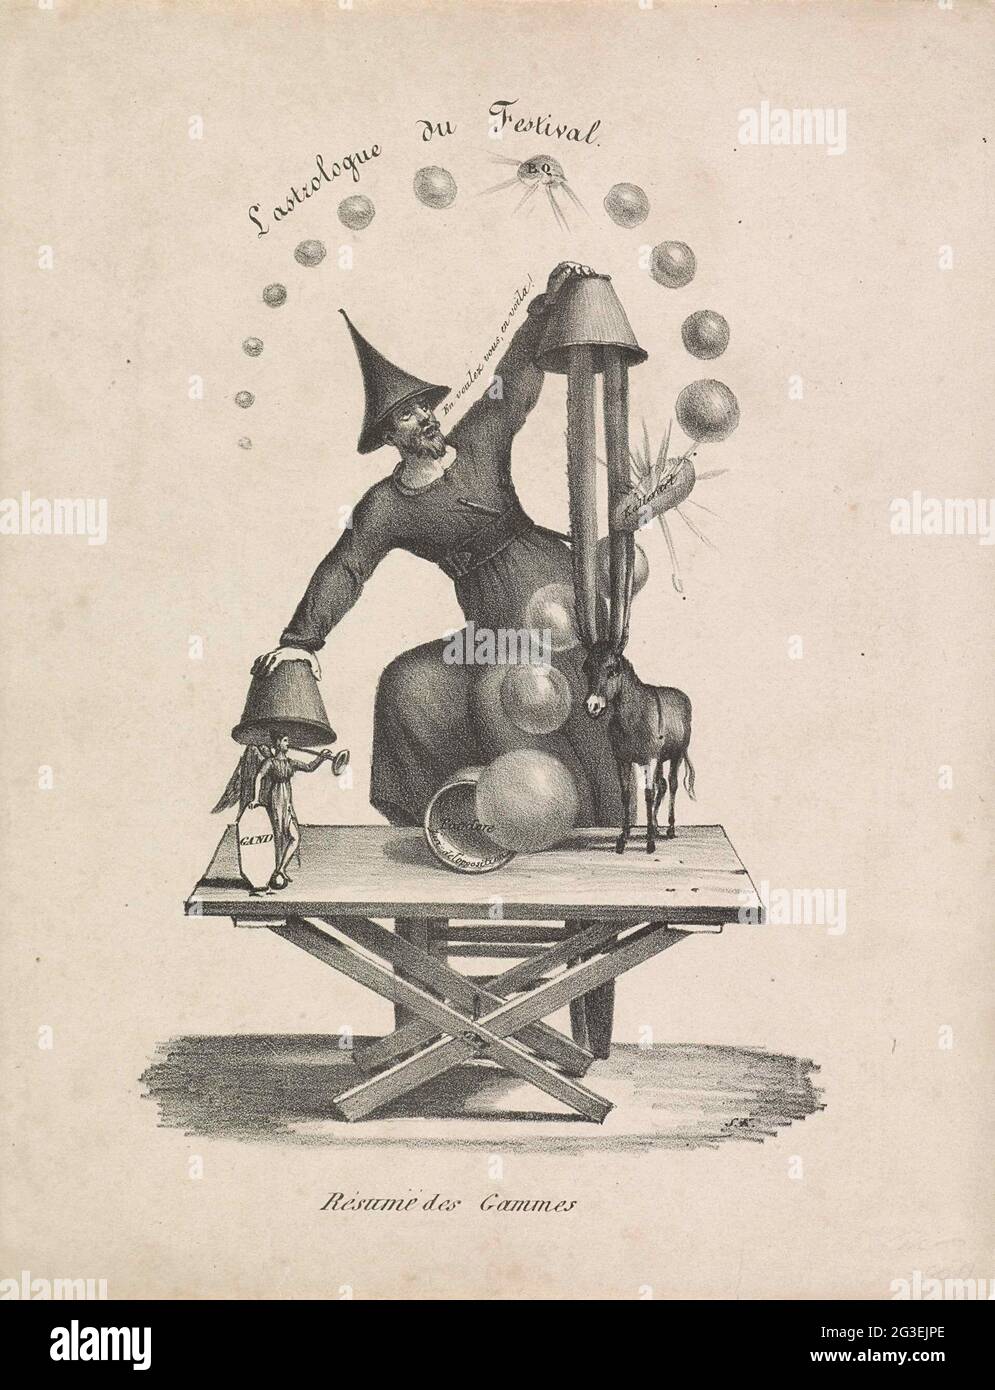 Karikatur beim Musikwettbewerb in Lille, 1829; L'Astrologue du Festival /  Résumé des Gammes. Karikatur beim Musikwettbewerb, der am 30. Juni 1829 in  Lille stattfand. Ein Zauberer auf einem Stellage kippen einen Becher,